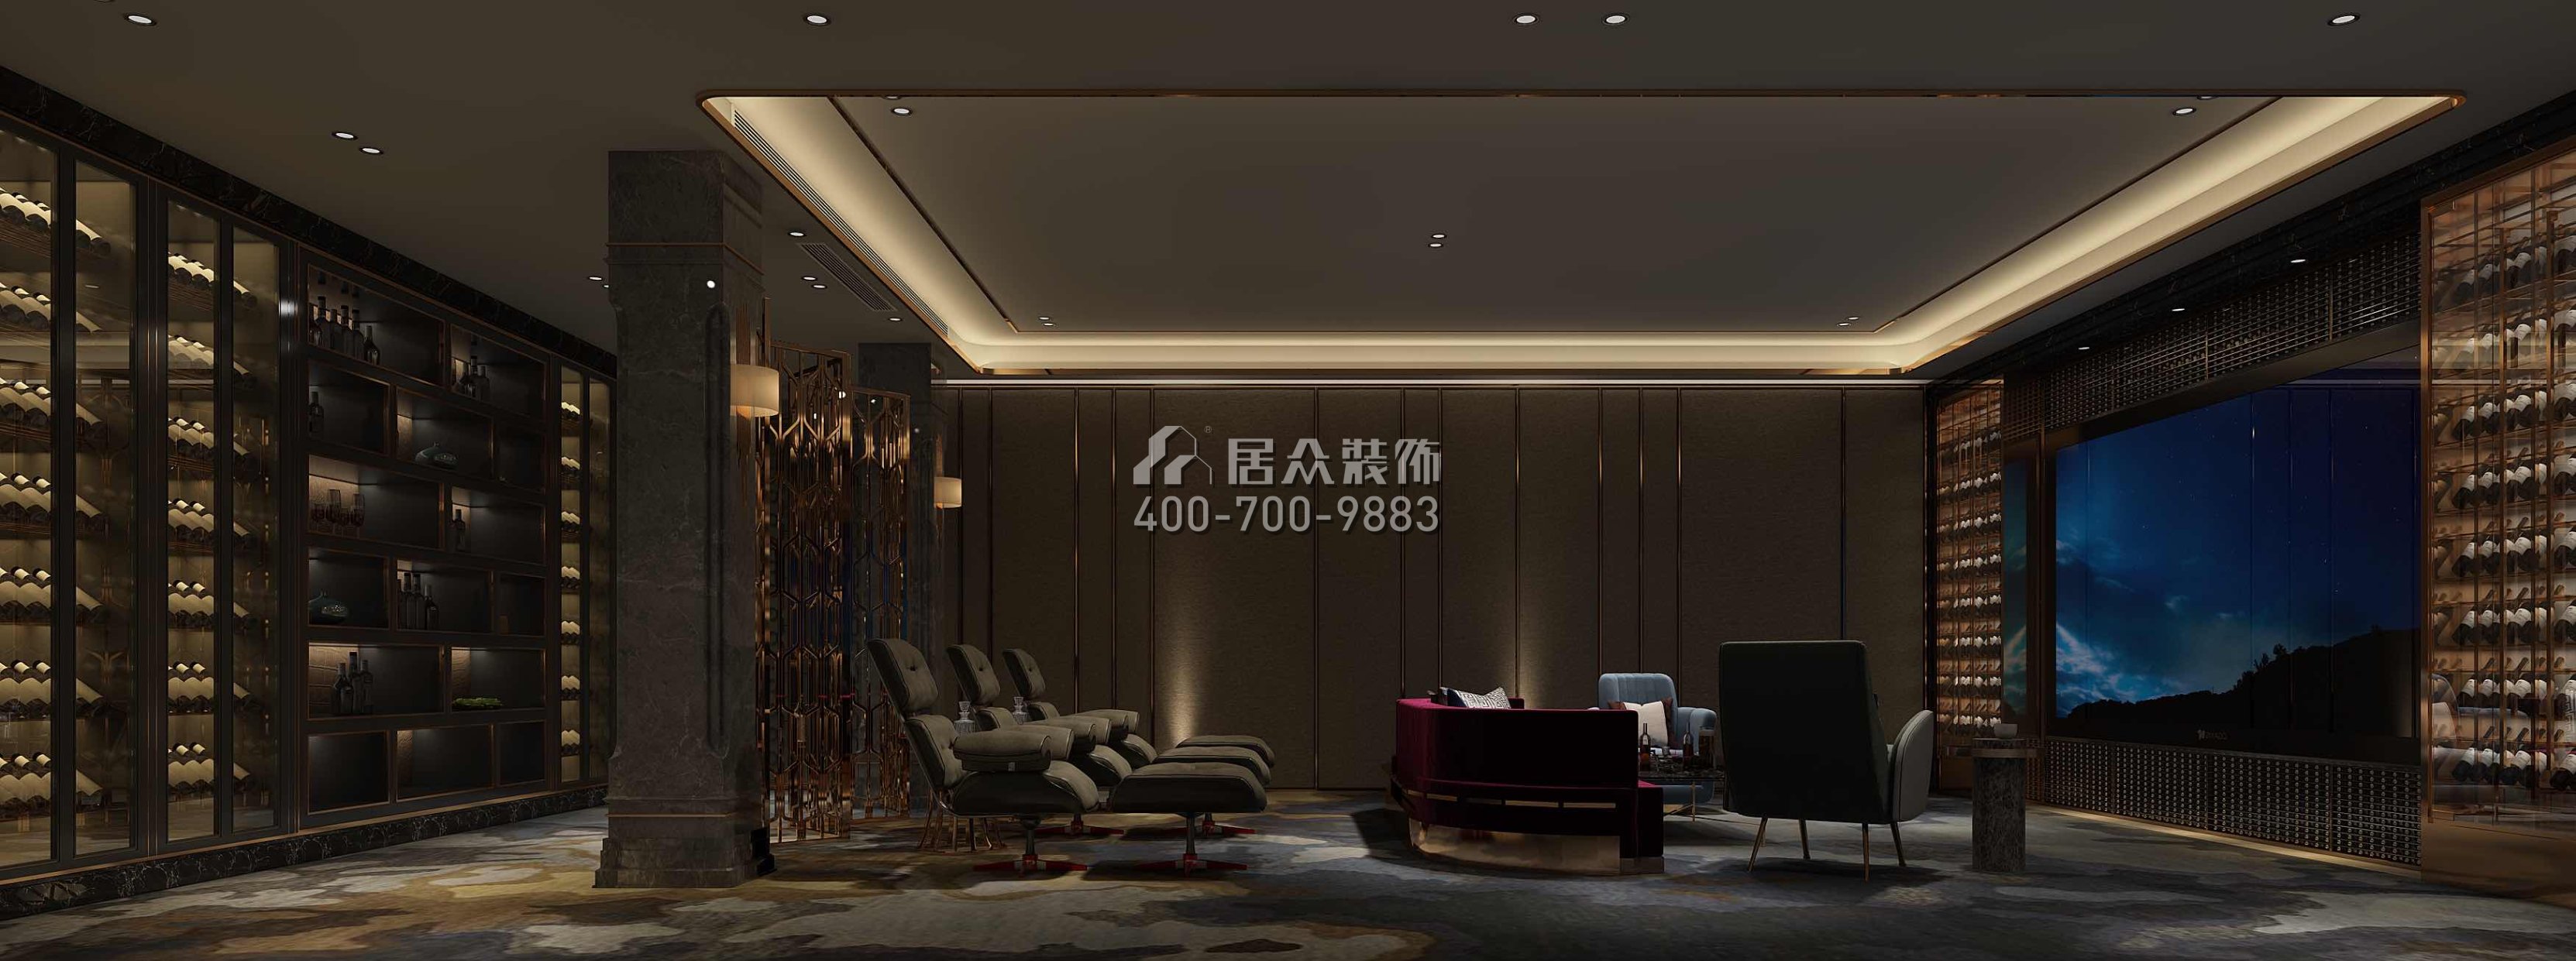 星河丹堤1150平方米中式风格别墅户型家庭影院（中国）科技有限公司官网效果图